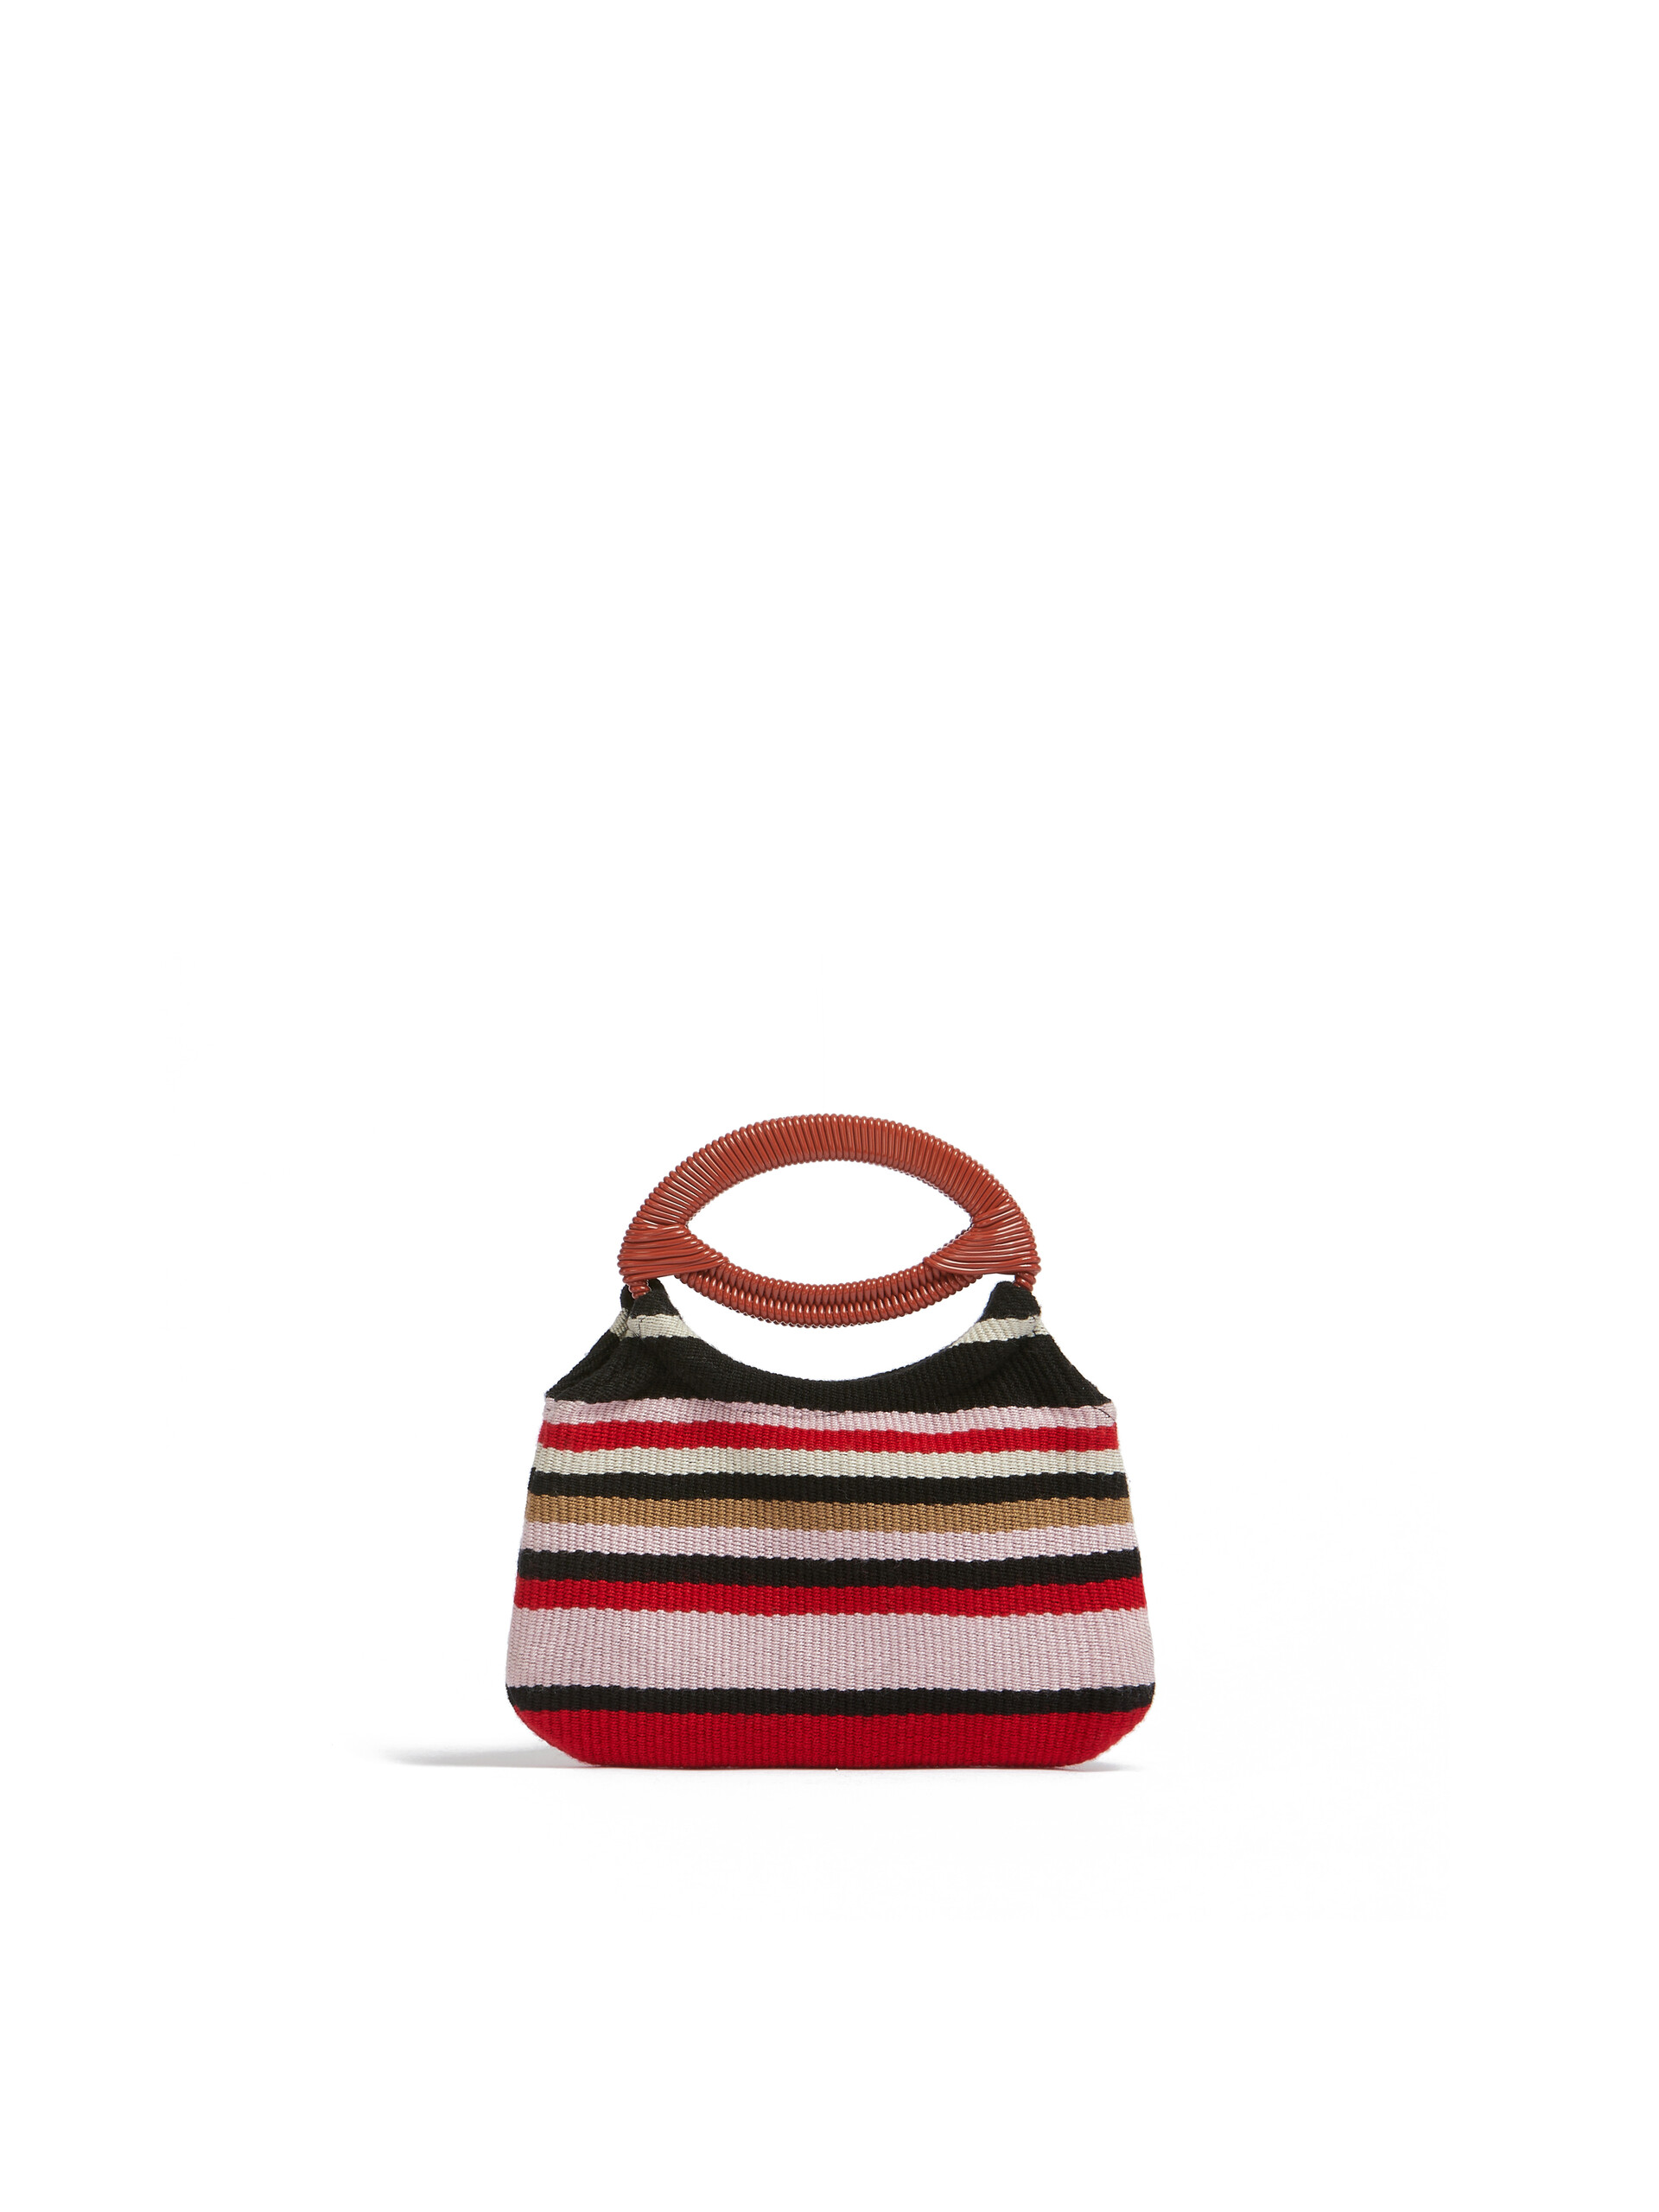 Red Striped Marni Market Mini Boat Bag